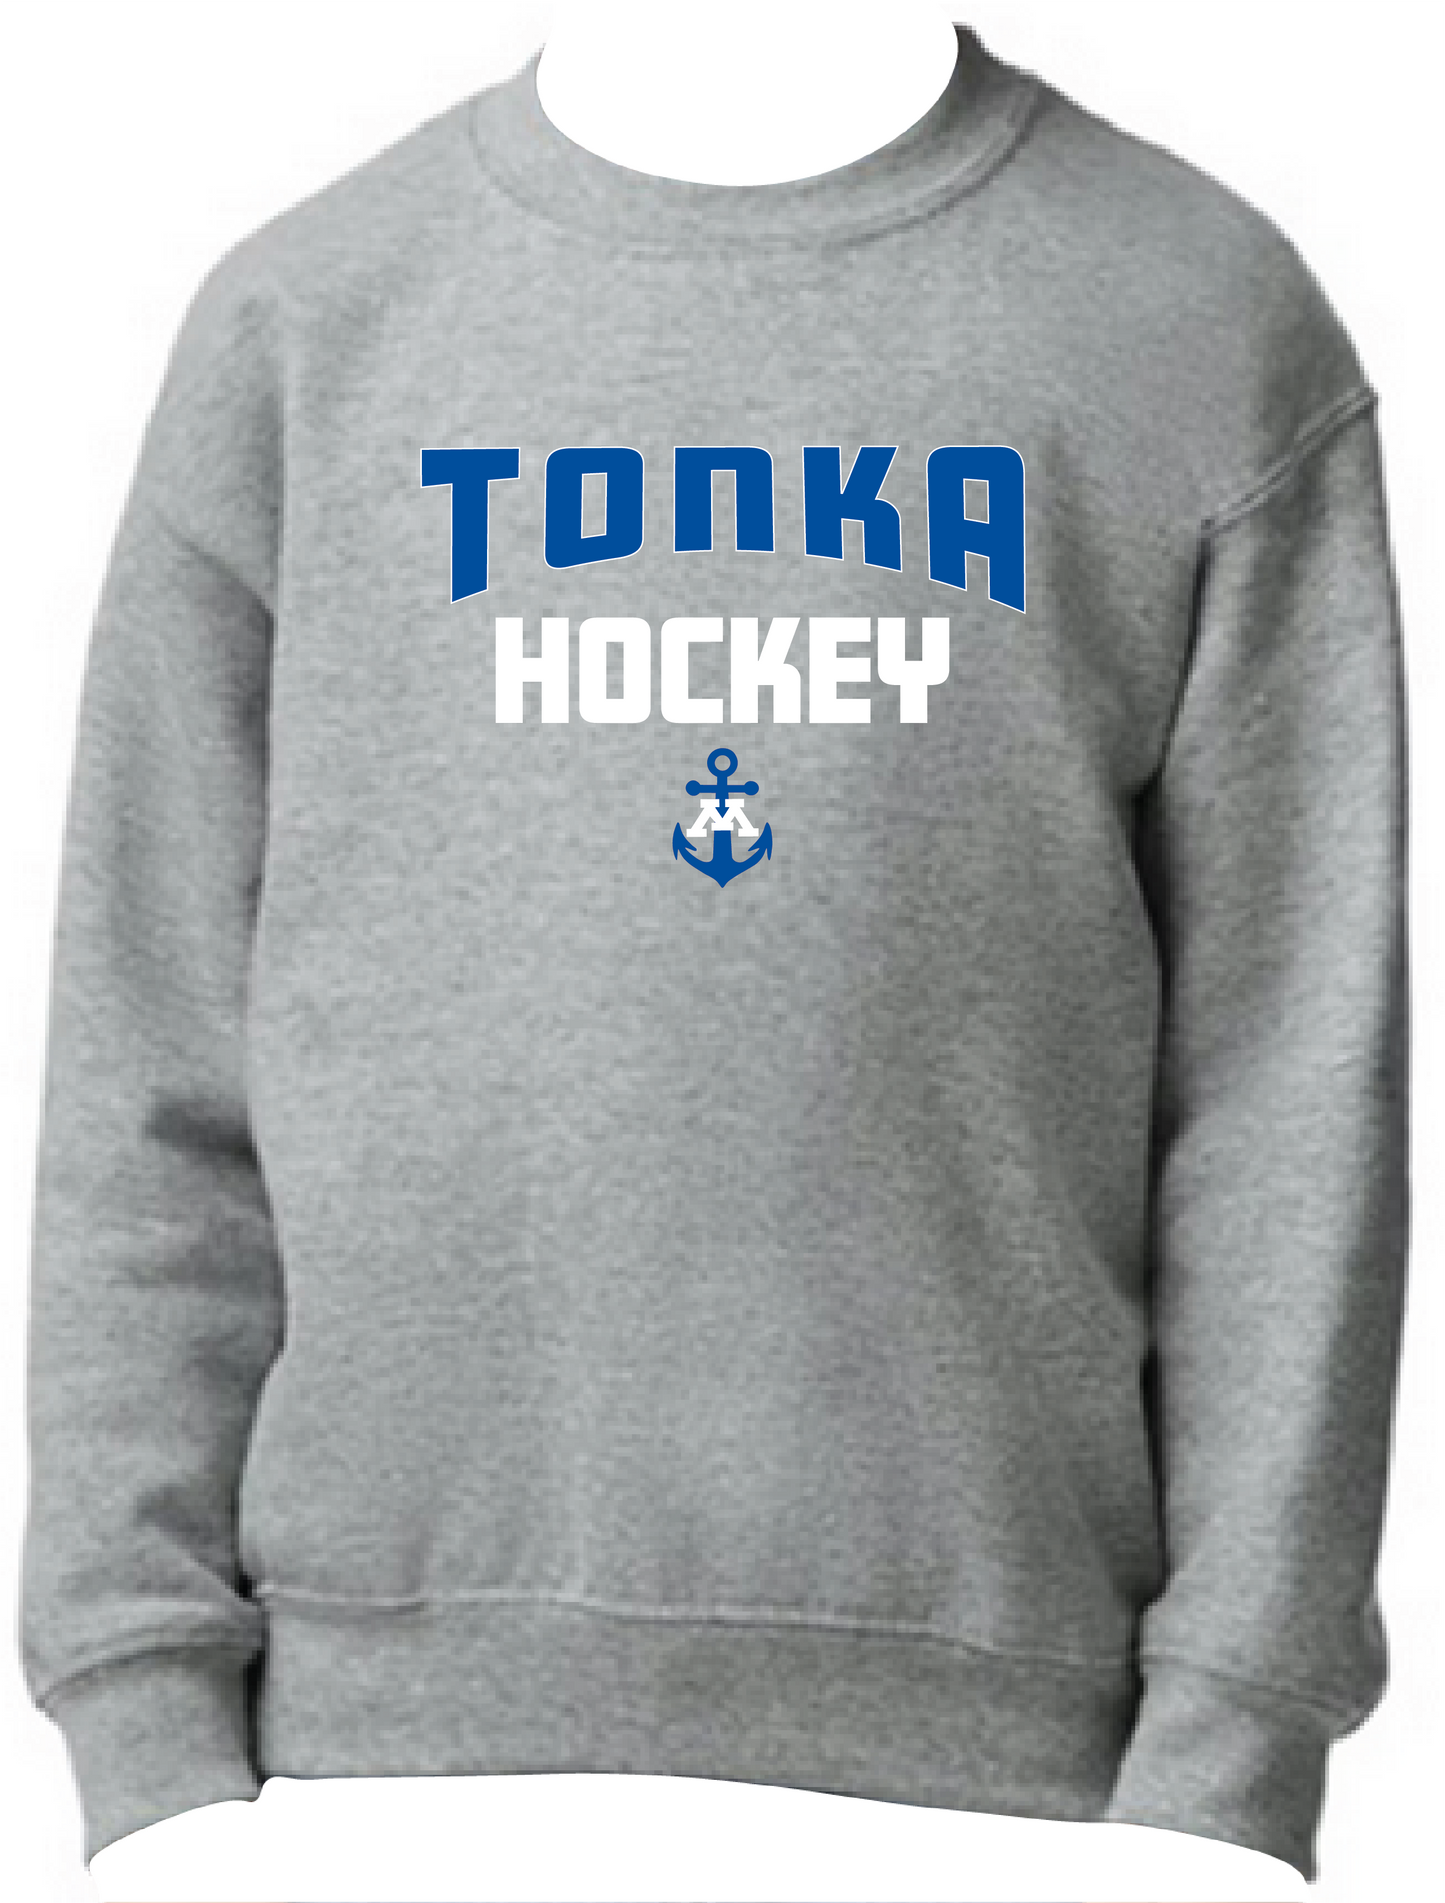 Tonka Hockey Small Anchor Heather Graphite